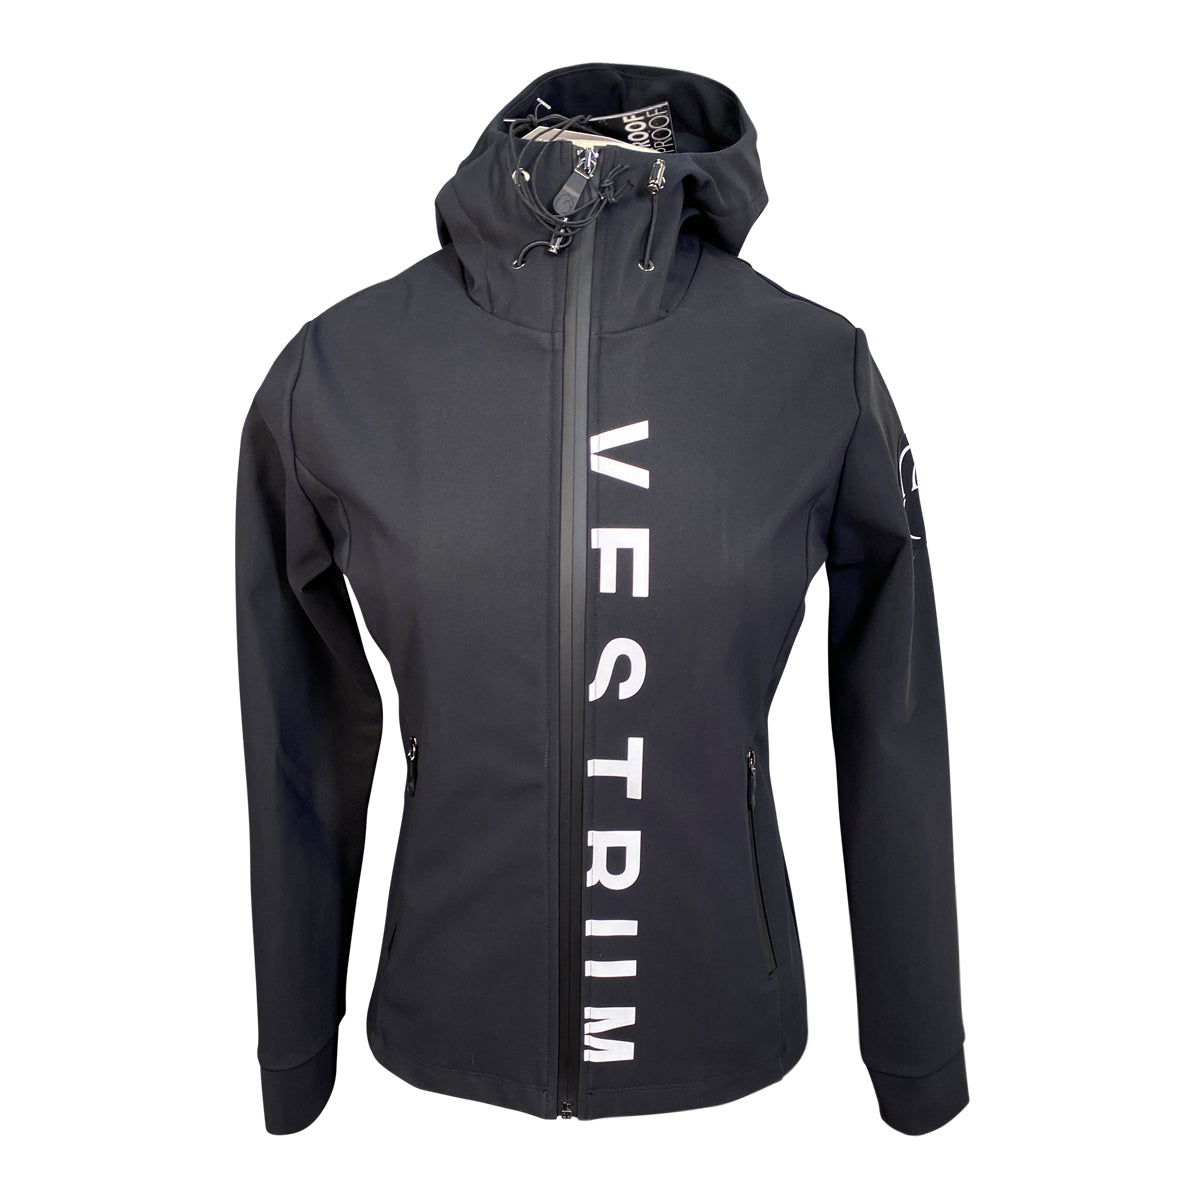 Vestrum 'Hemsedal' Warmup Jacket in Black